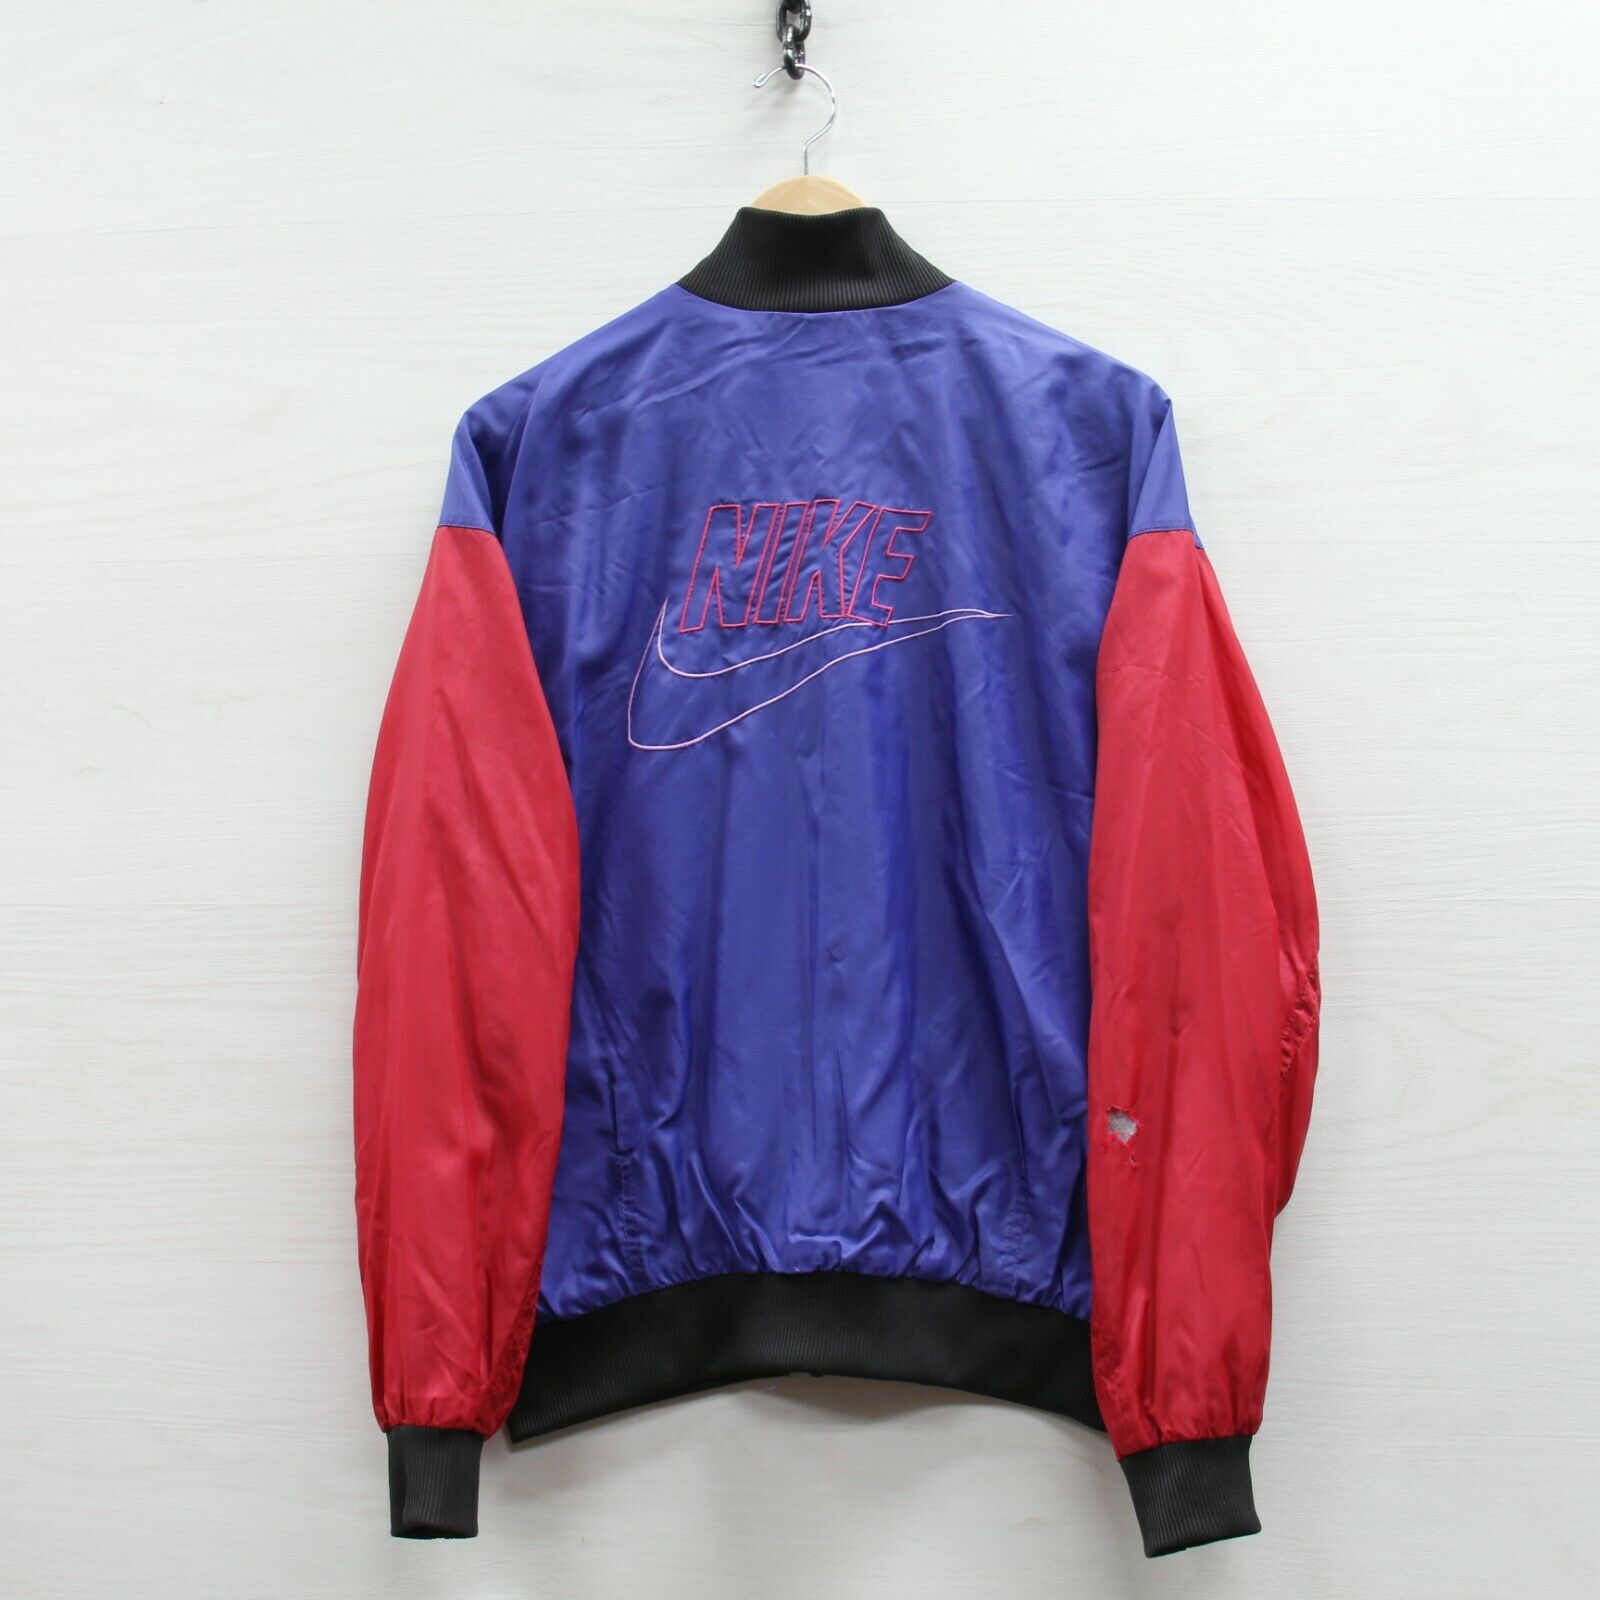 Vintage Nike Windbreaker Jacket Size Medium Purple & Red 90s